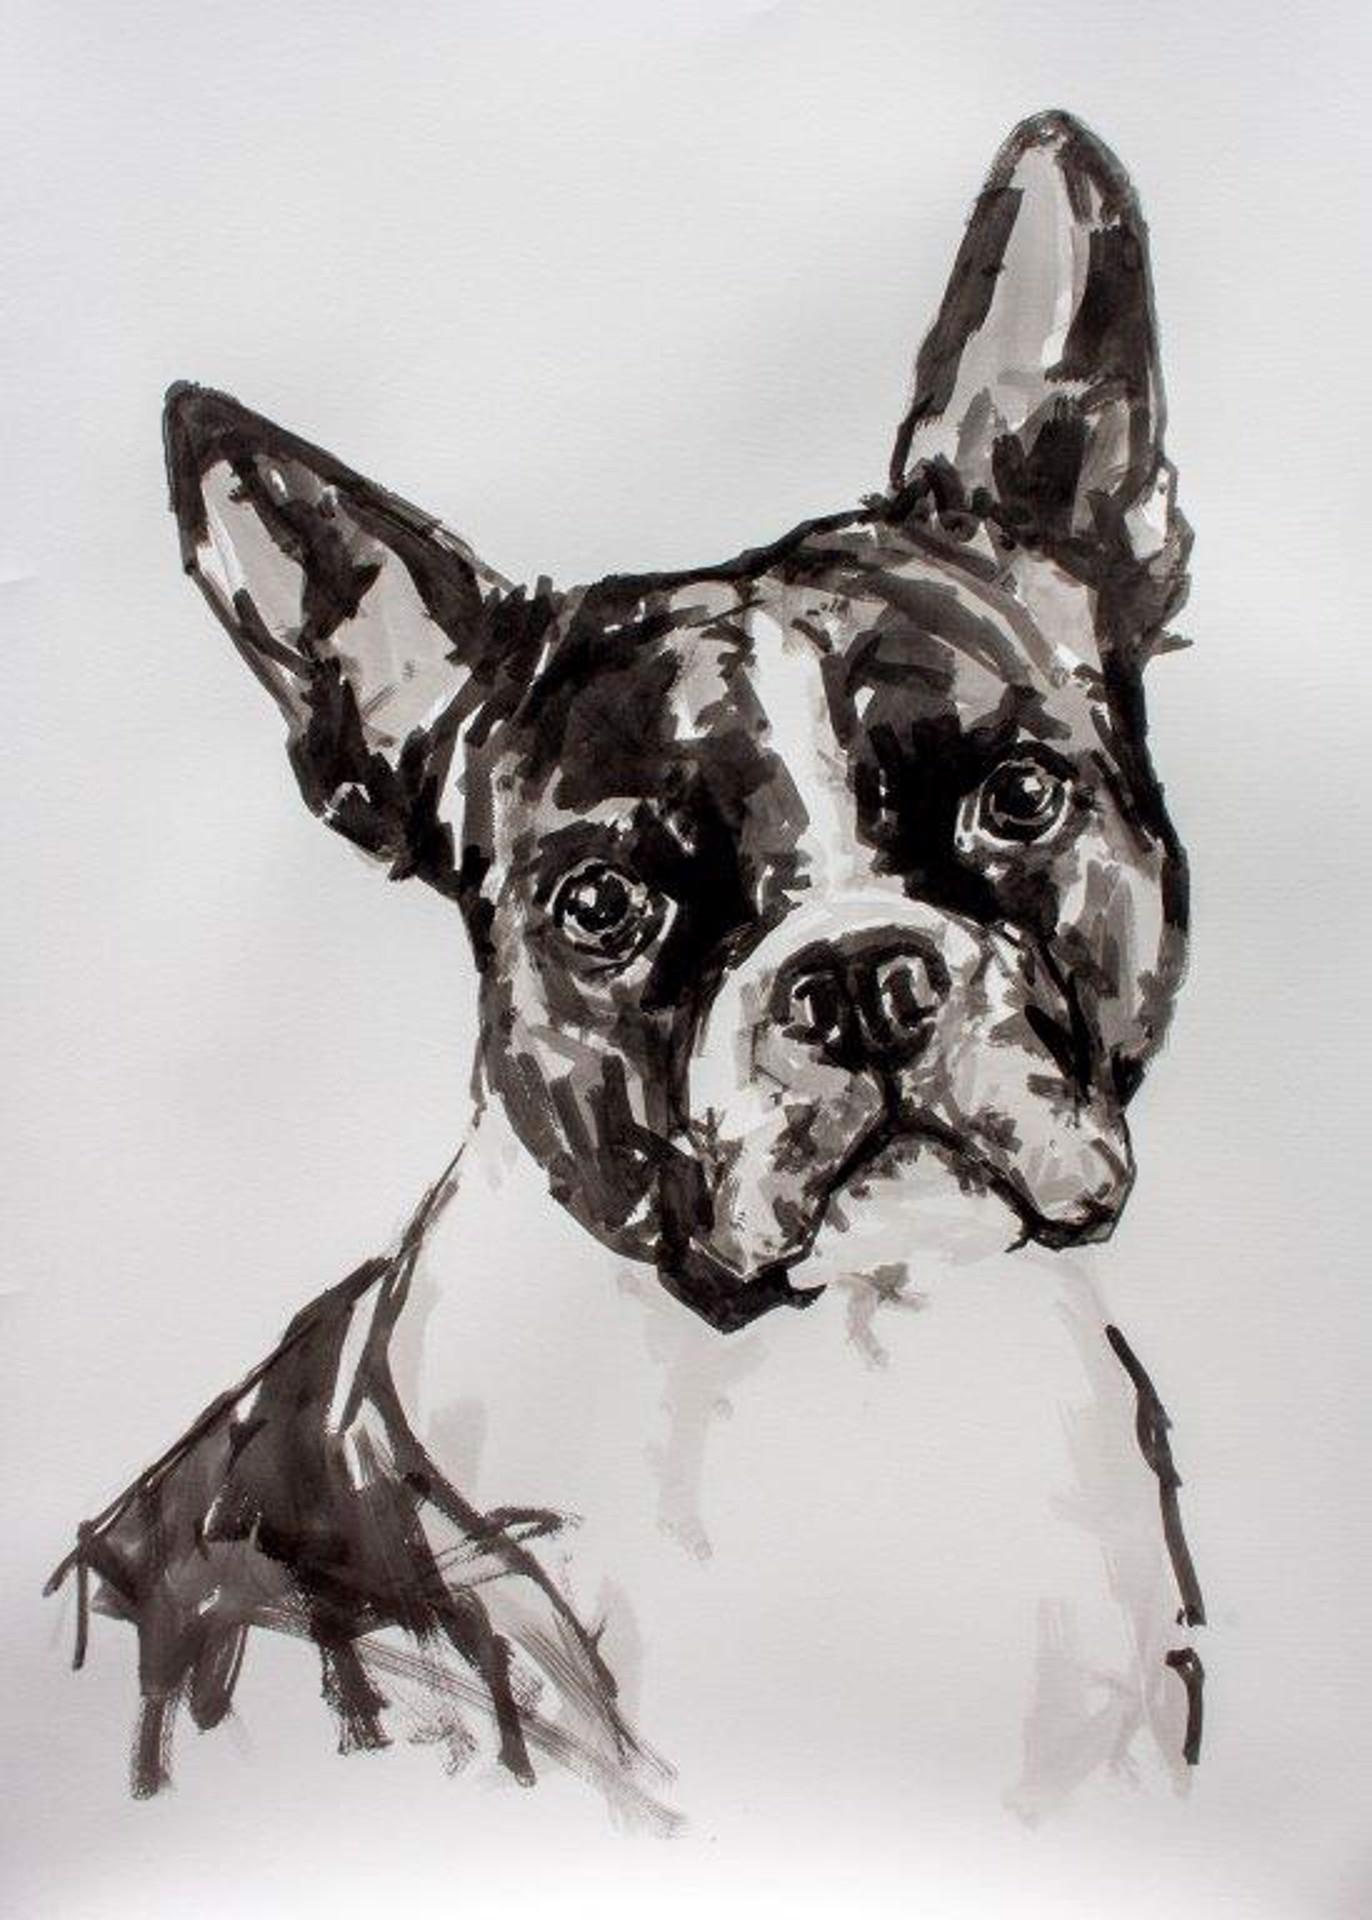 Boston Terrier, großes zeitgenössisches, minimalistisches Porträt eines Hundes in Schwarz auf Papier